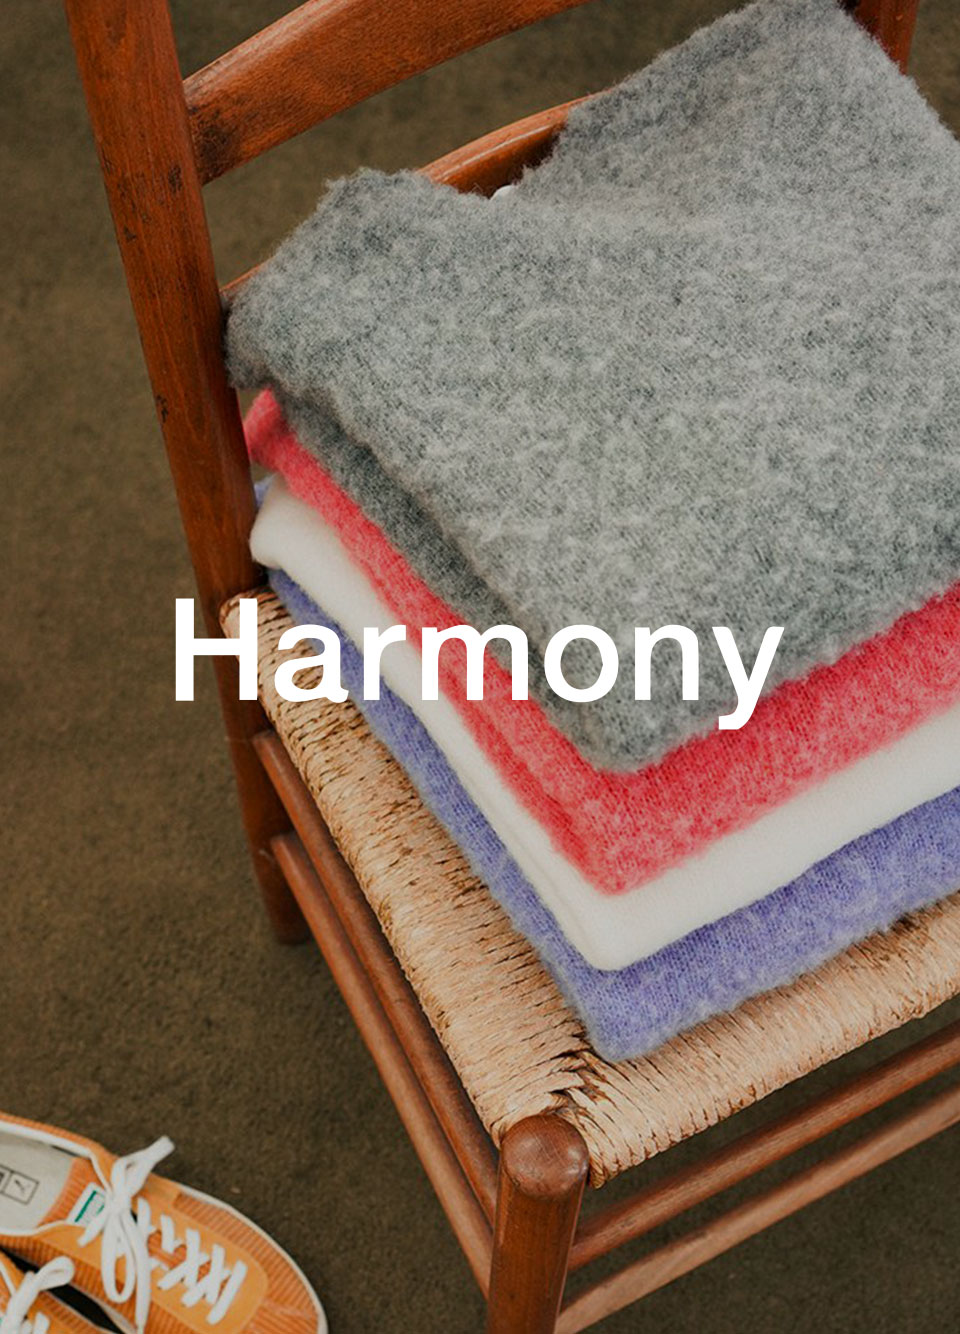 Brand in Focus: Harmony